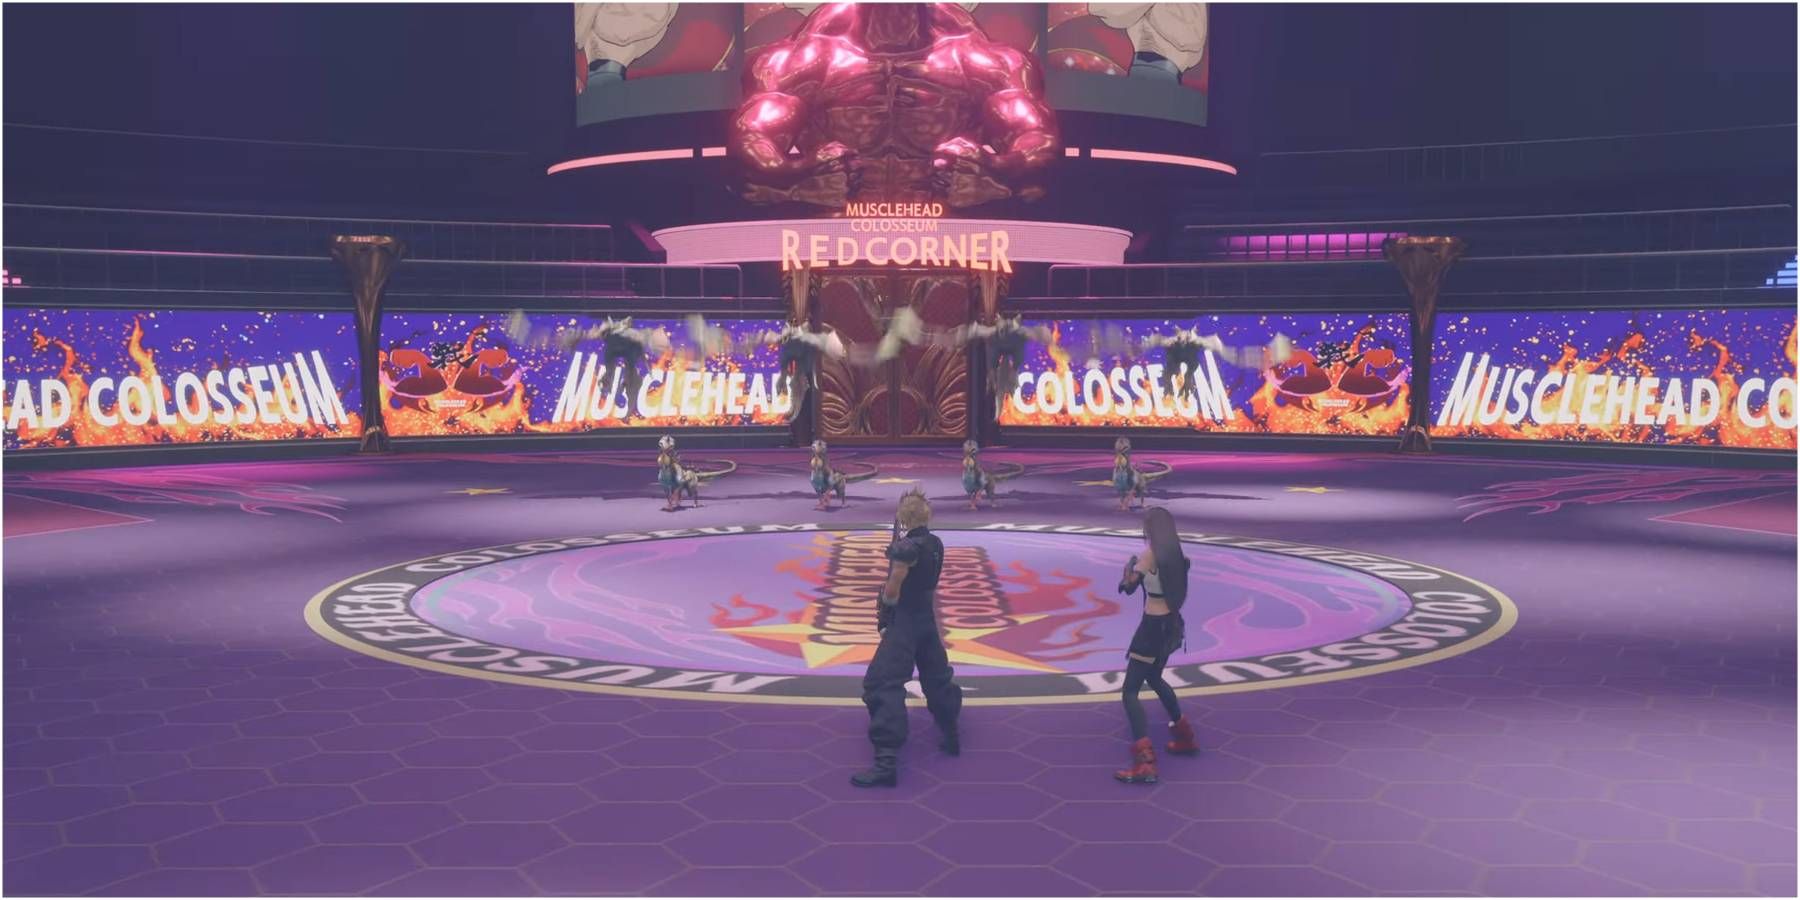 Final Fantasy 7 Rebirth_Musclehead Colosseum